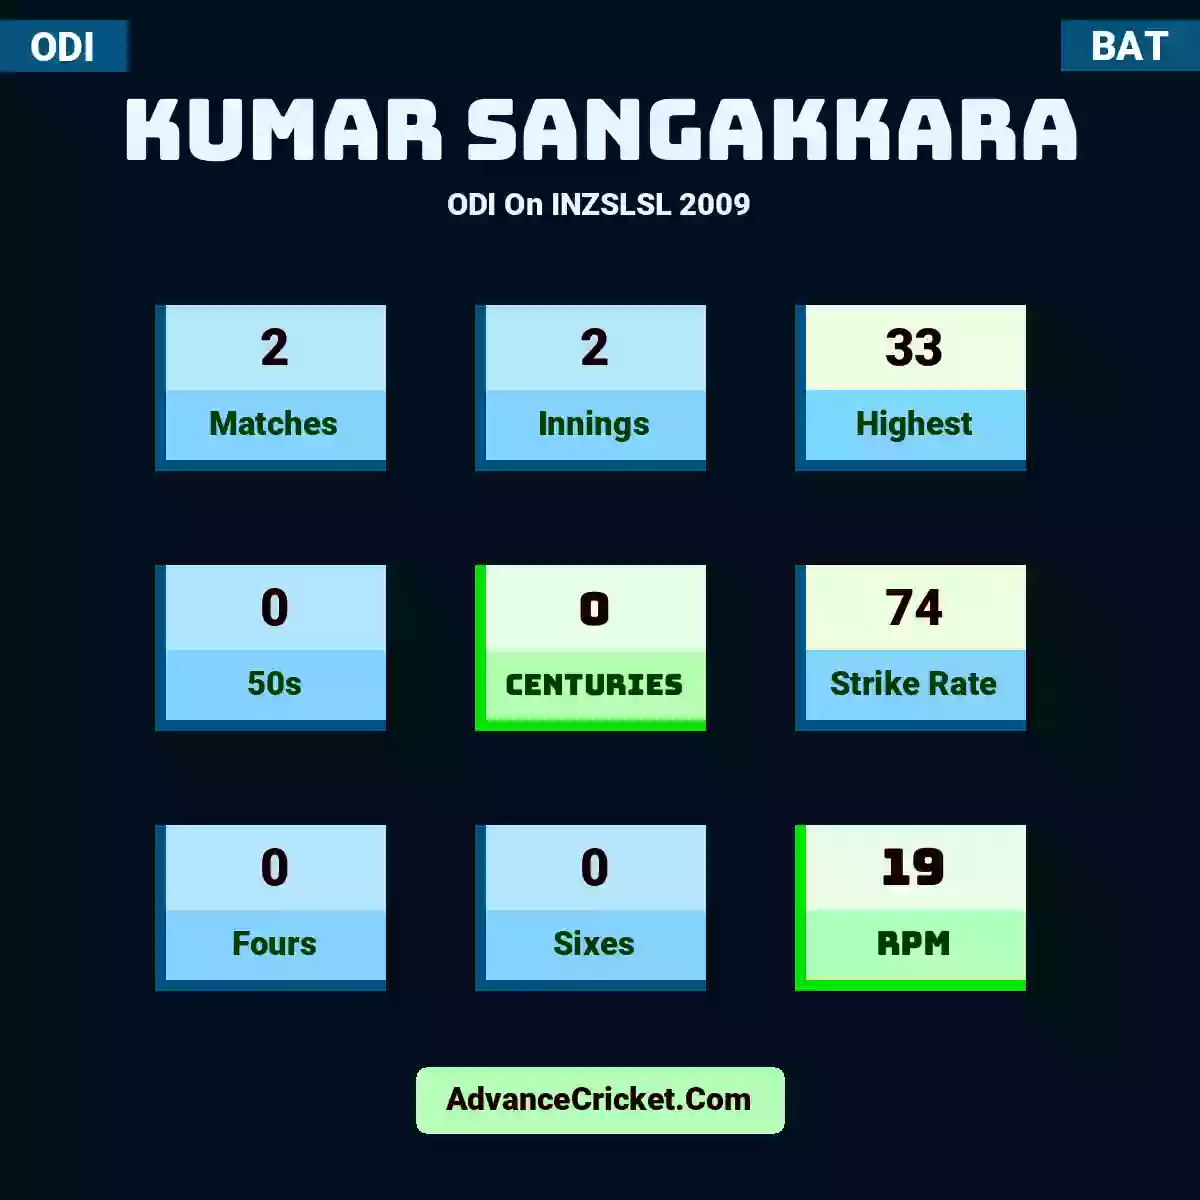 Kumar Sangakkara ODI  On INZSLSL 2009, Kumar Sangakkara played 2 matches, scored 33 runs as highest, 0 half-centuries, and 0 centuries, with a strike rate of 74. K.Sangakkara hit 0 fours and 0 sixes, with an RPM of 19.